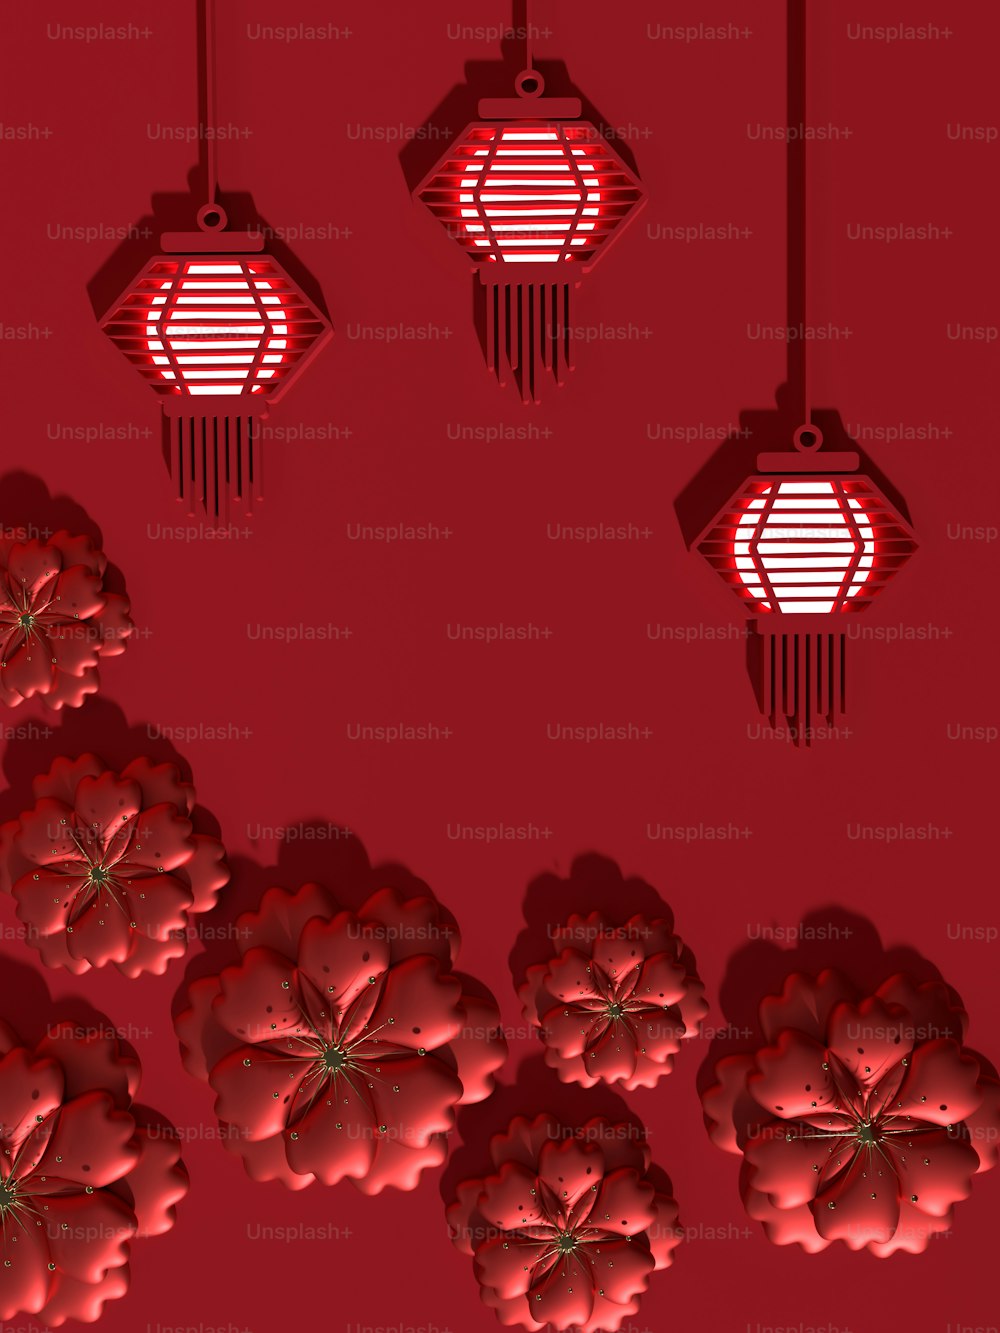 Un groupe de lanternes rouges suspendues au plafond